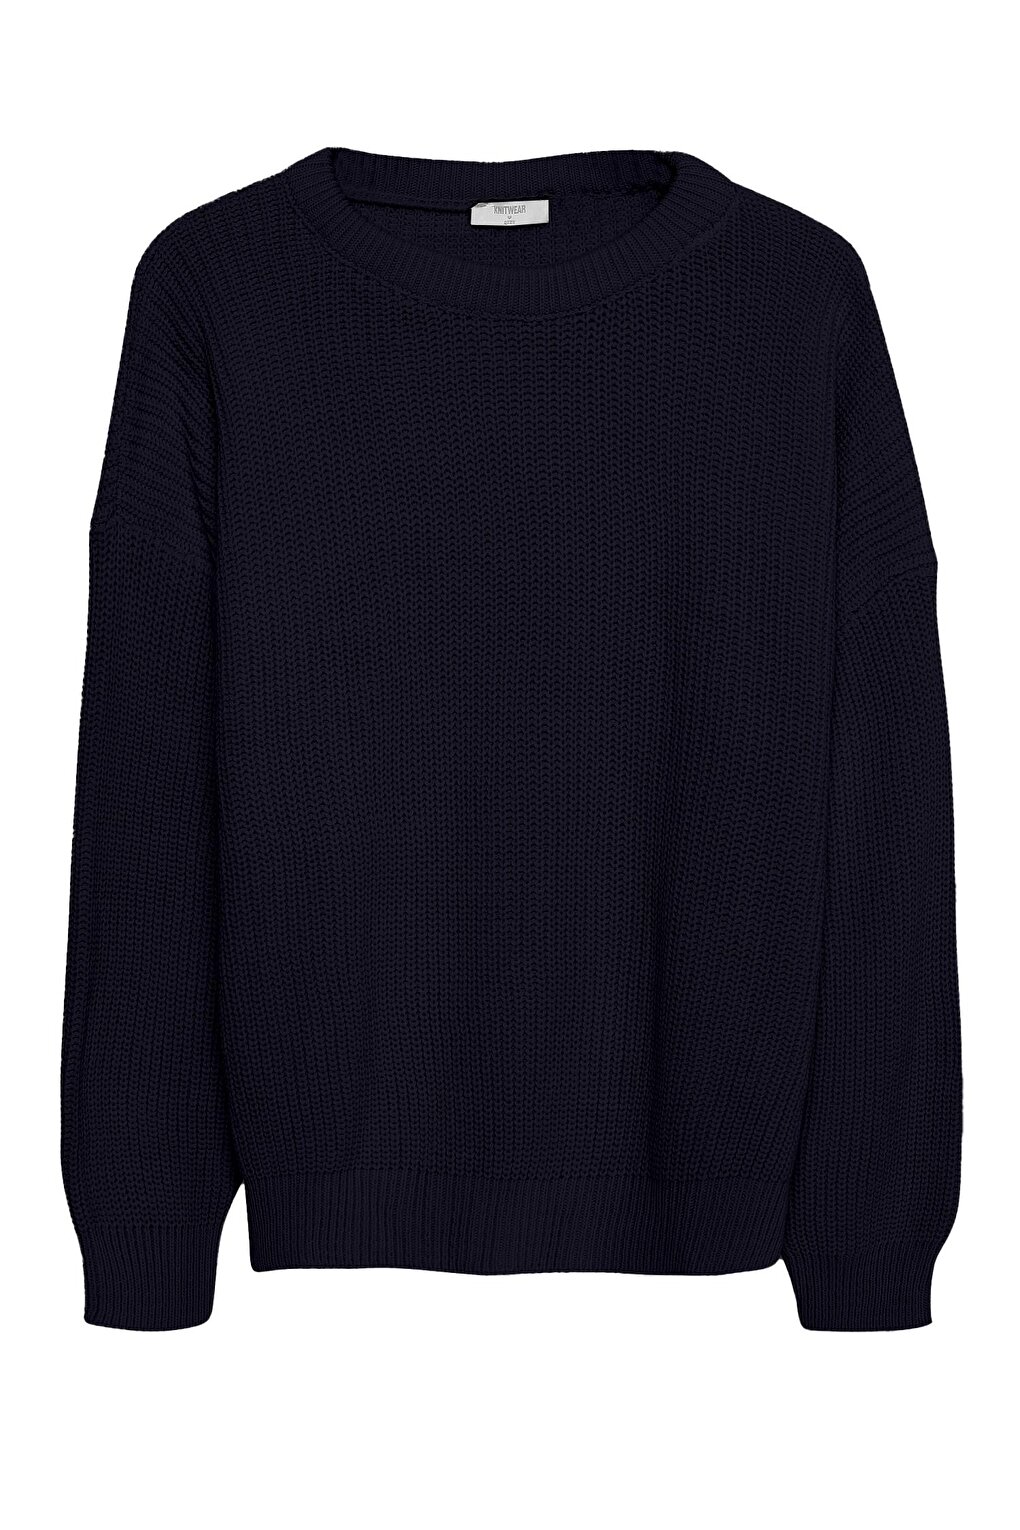 Вязаный свитер с круглым вырезом Темно-синий QUZU вязаный свитер с круглым вырезом кремовый quzu